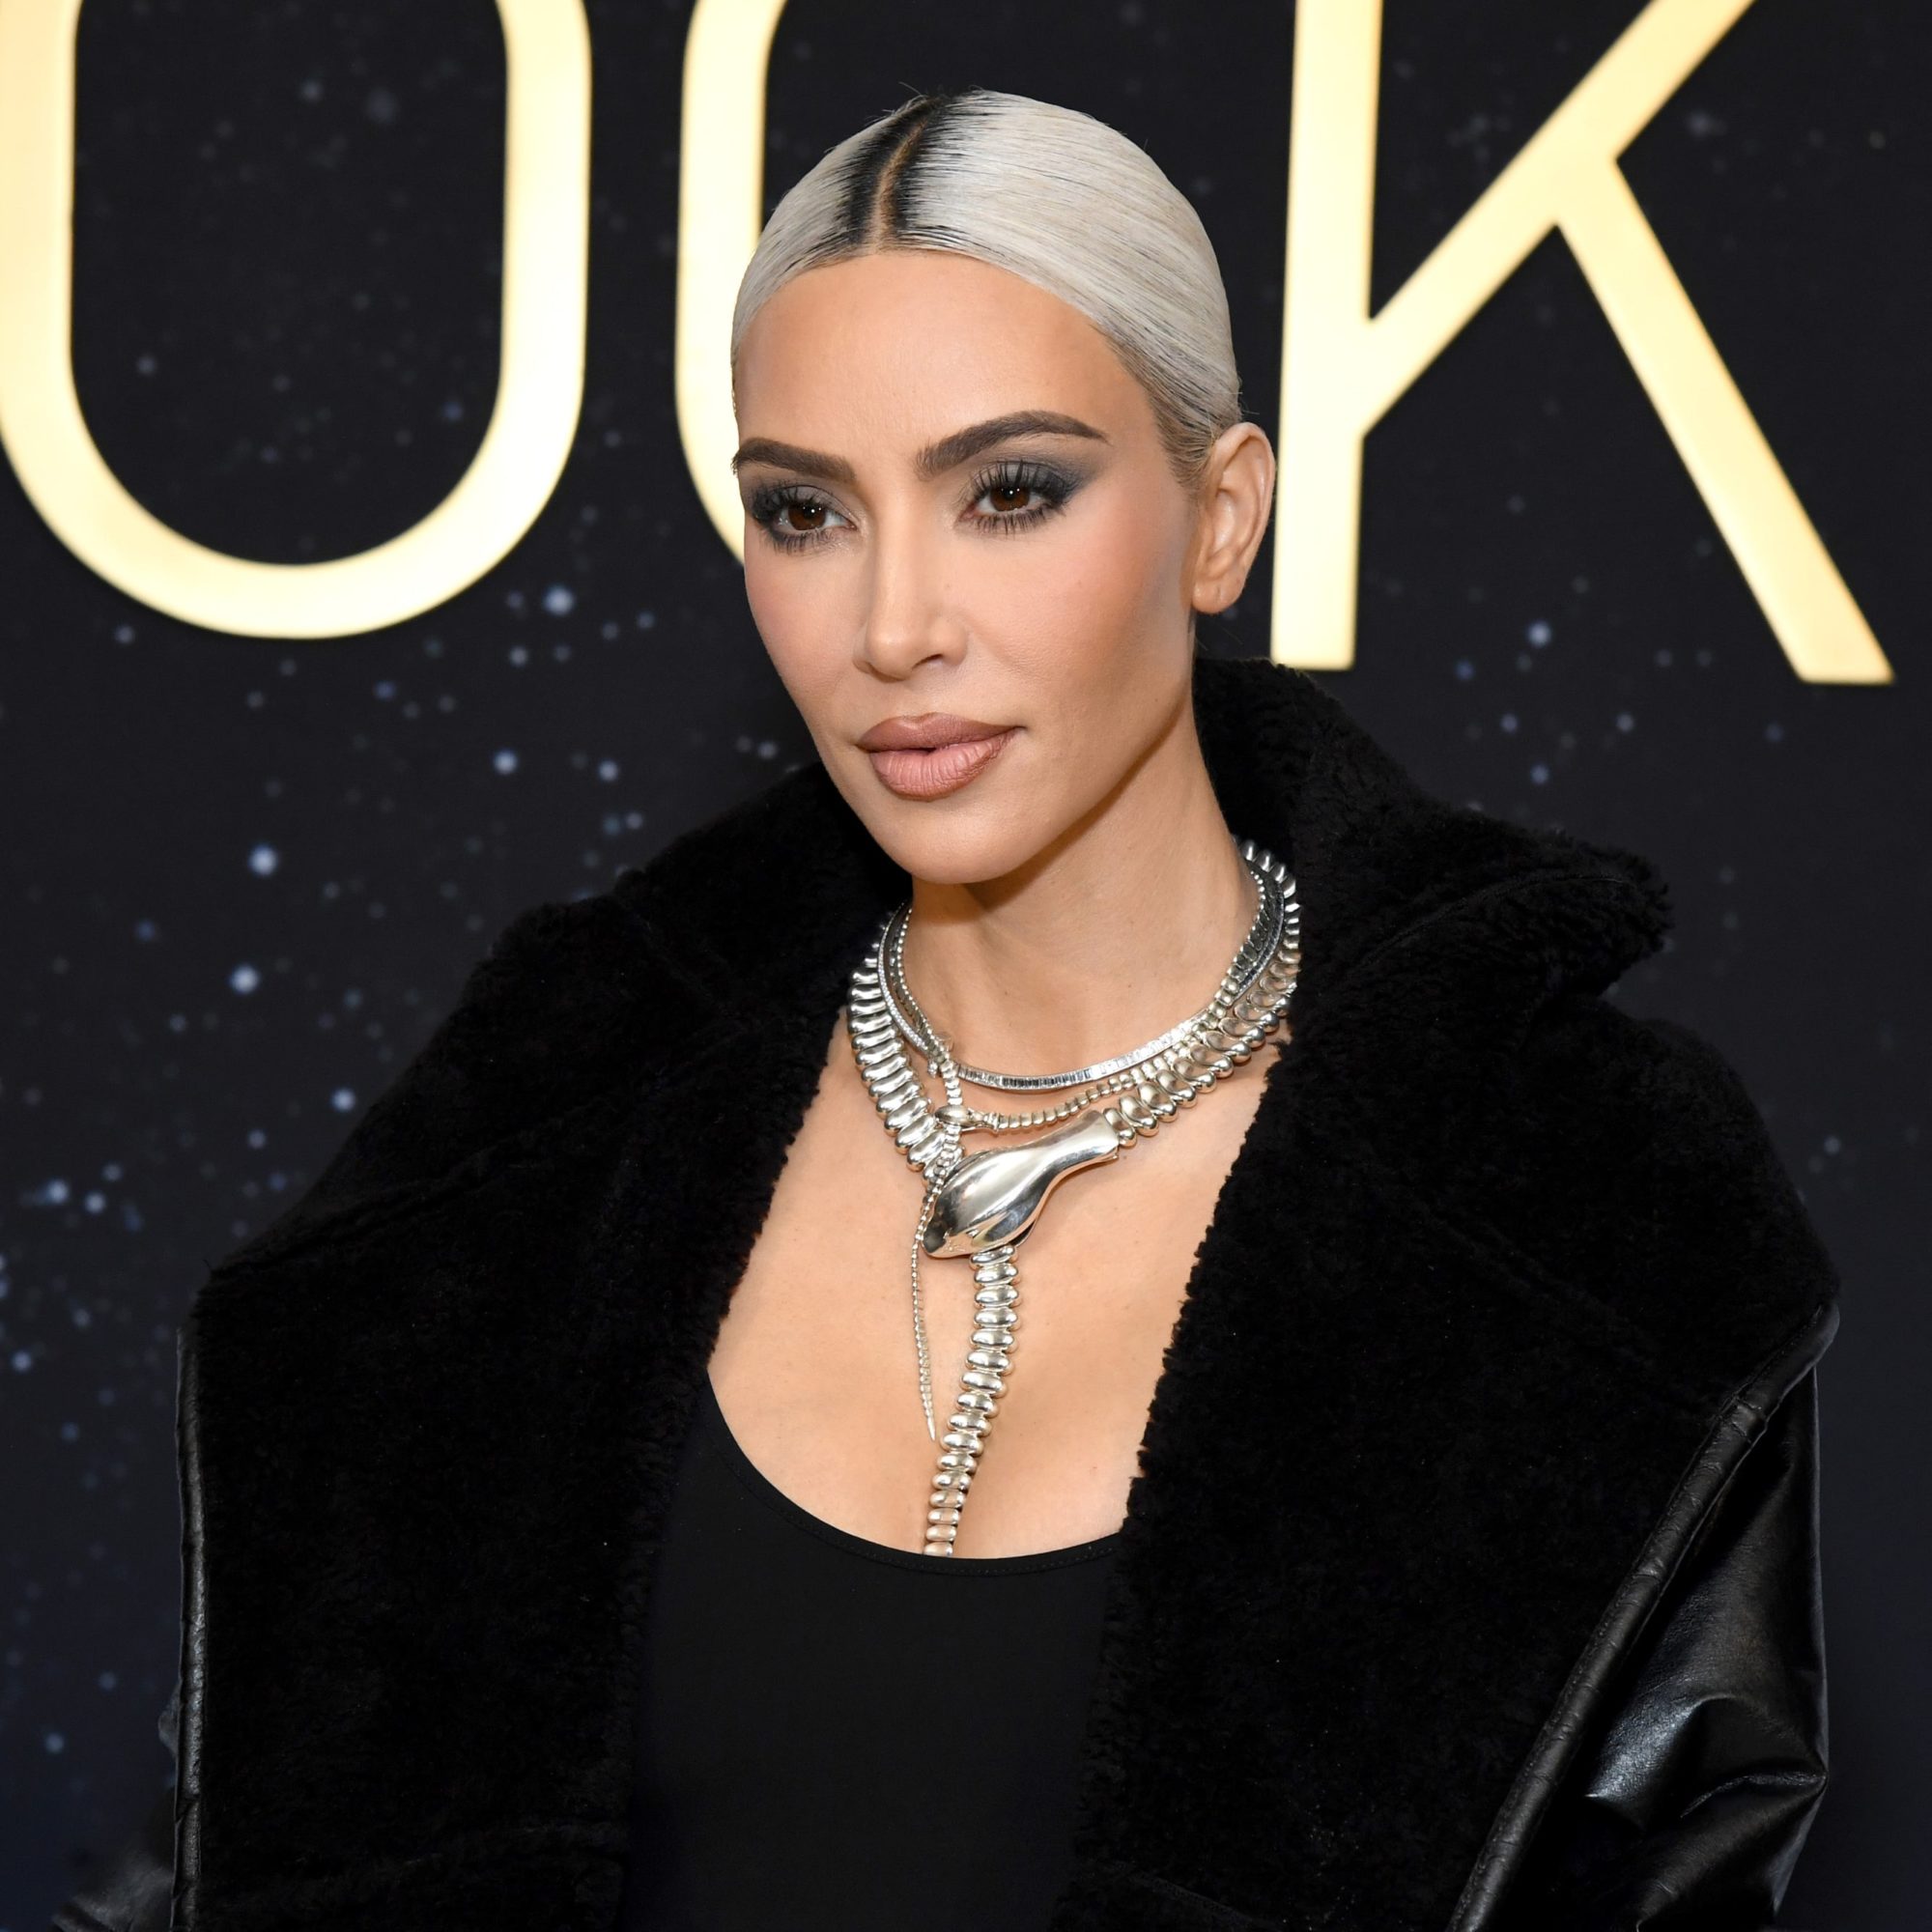 Kim Kardashian admet qu’elle fantasme sur le remariage : “La quatrième fois, c’est le charme”